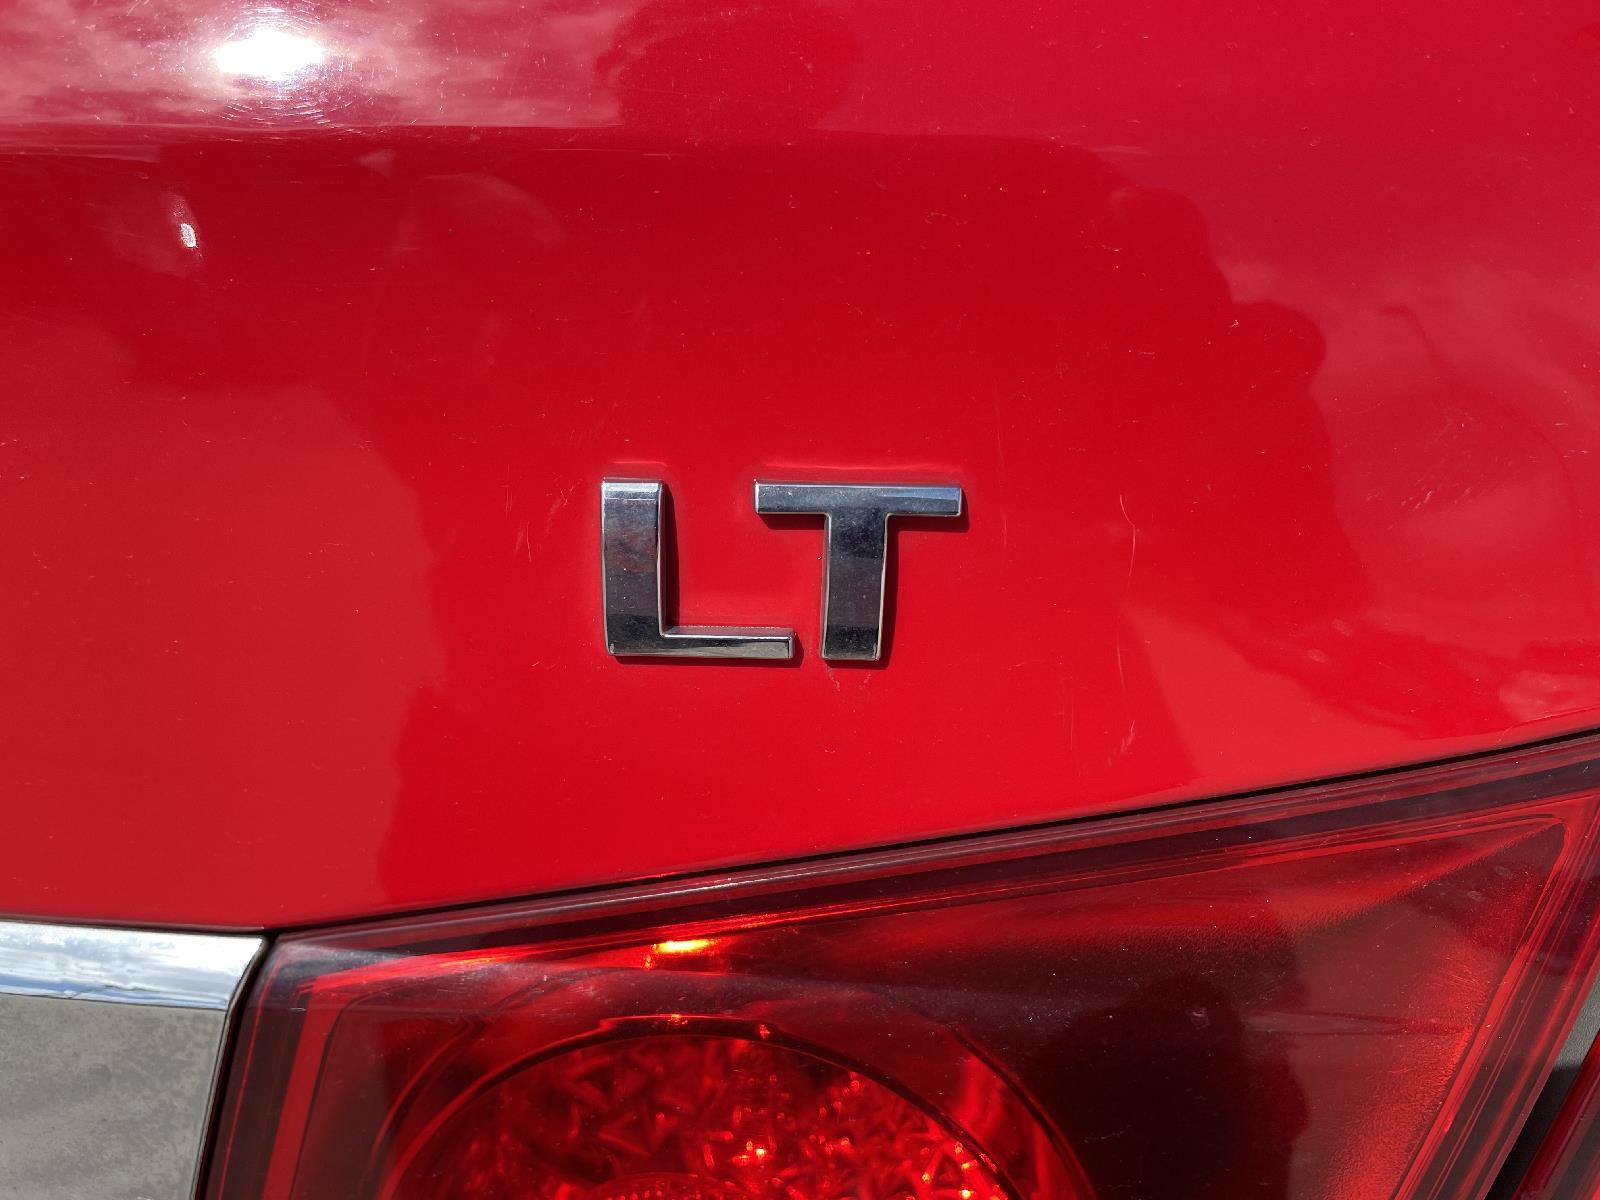 Used 2014 Chevrolet Cruze 1LT Sedan for sale in Lincoln NE